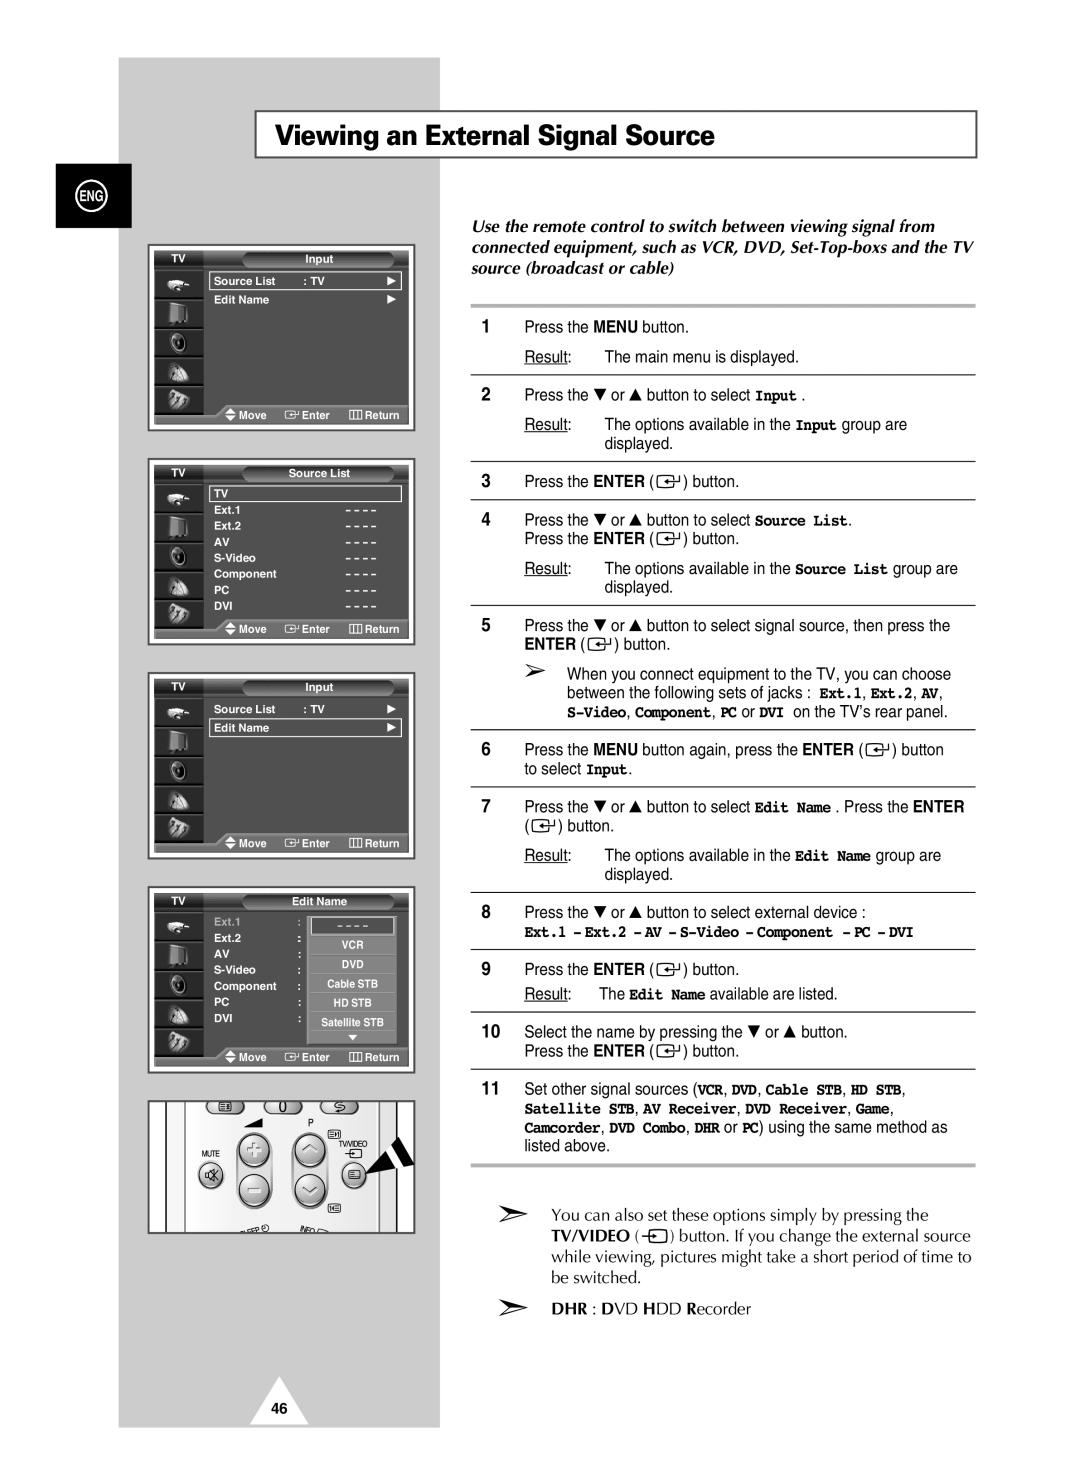 Samsung PAL60 manual Viewing an External Signal Source, Ext.1 Ext.2 AV S-Video Component PC DVI 